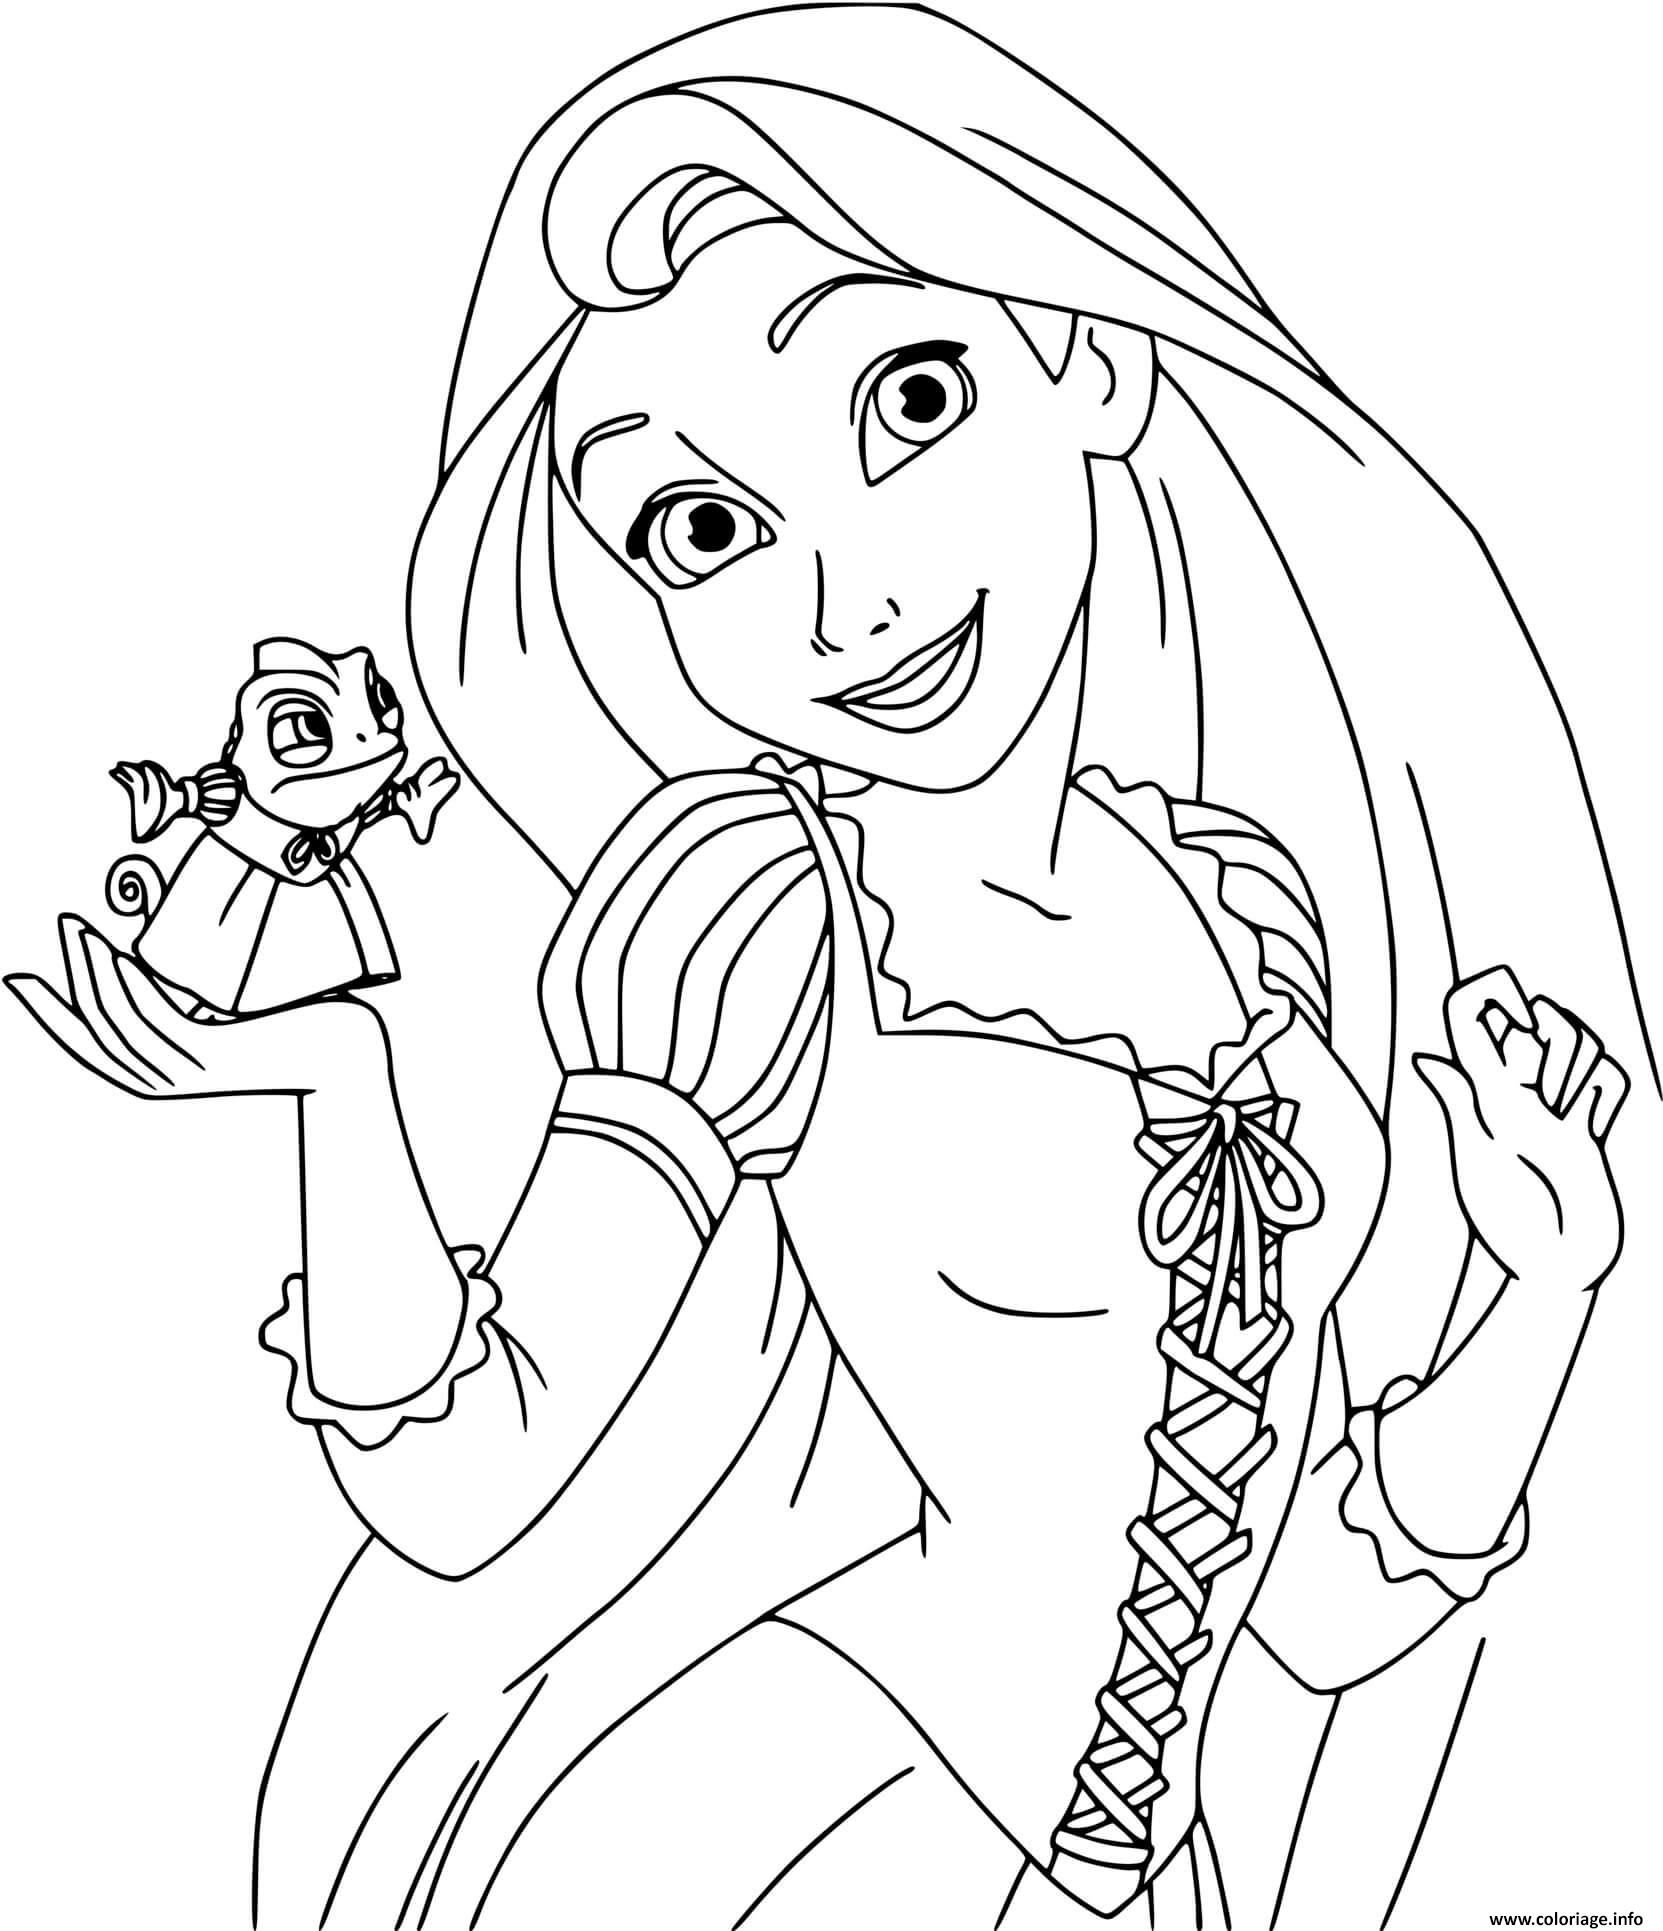 Download Coloriage La Princesse Raiponce Rapunzel Du Conte Raiponce Des Freres Grimm Dessin Princesse ...